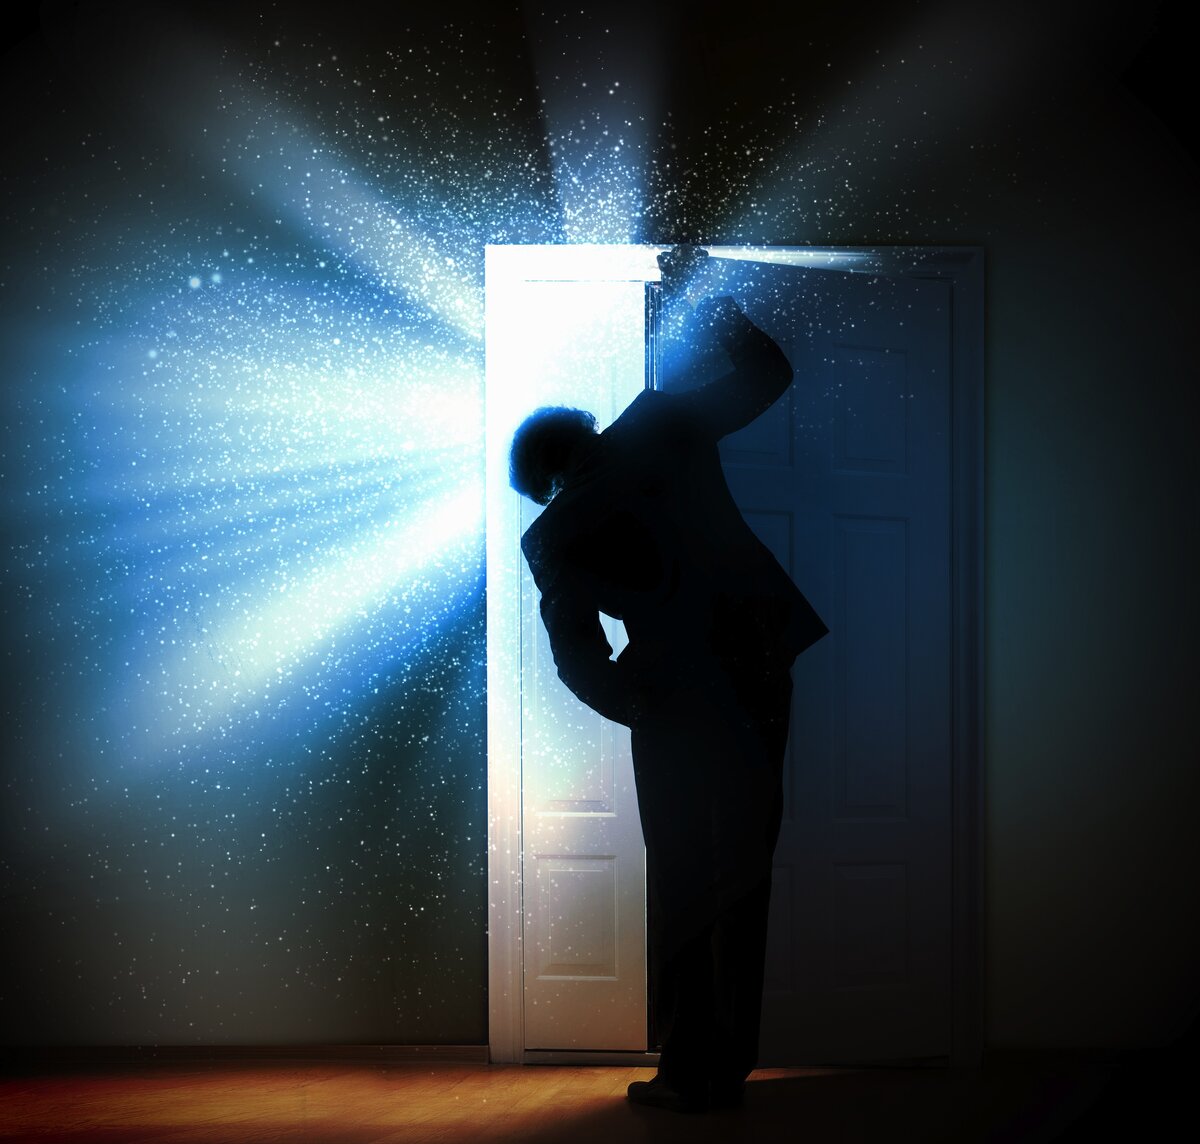 Прорицатель заглядывающий в будущее 9. Человек заглядывает в дверь. Открытая дверь. Открытая дверь свет. Дверь в темноте.